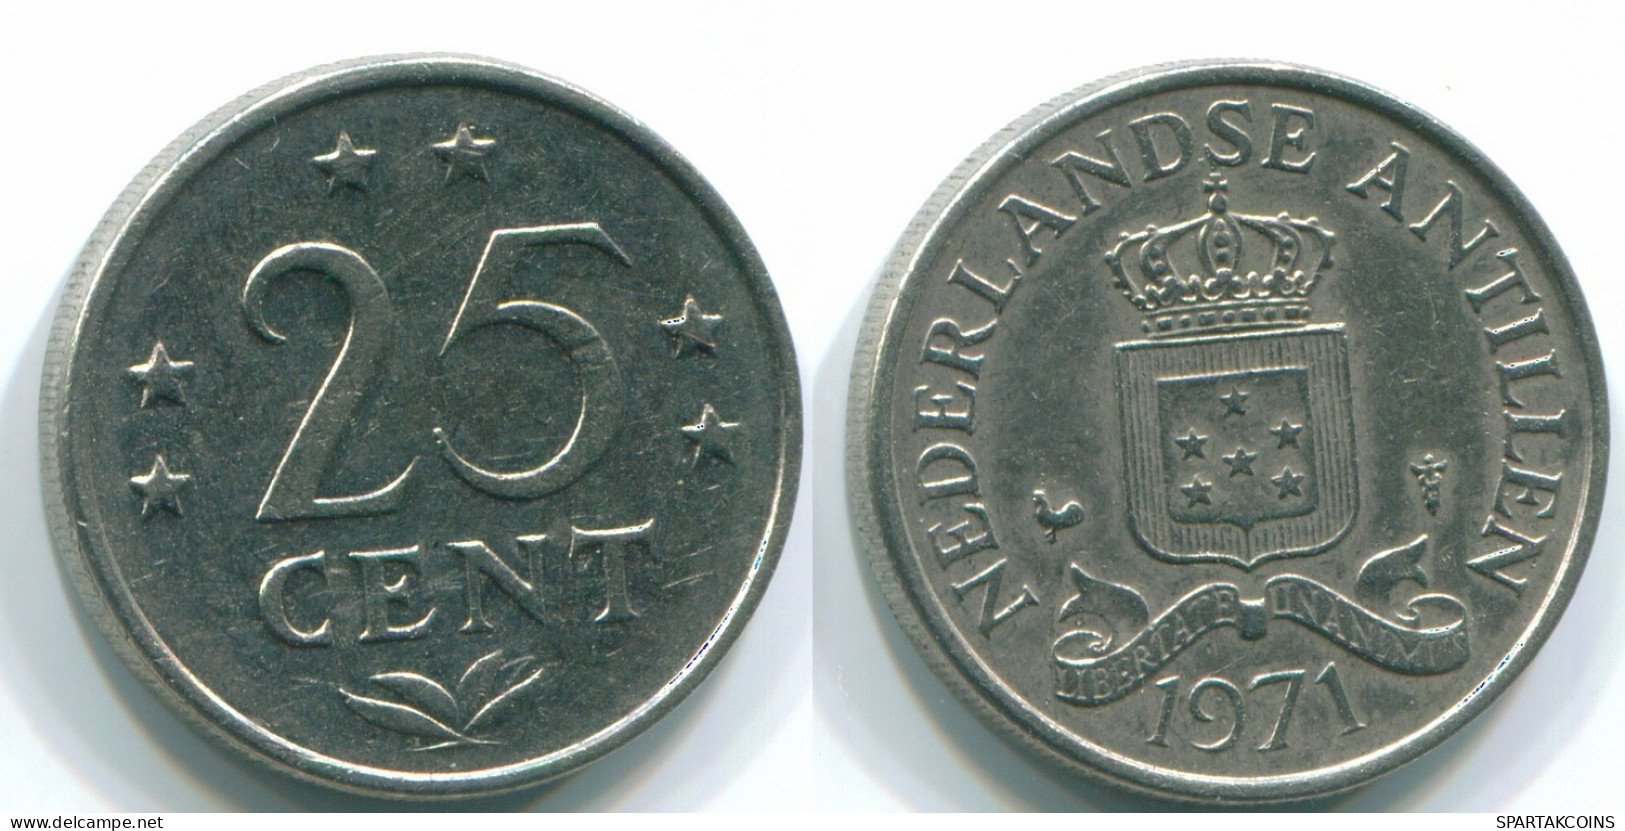 25 CENTS 1971 NIEDERLÄNDISCHE ANTILLEN Nickel Koloniale Münze #S11569.D.A - Niederländische Antillen